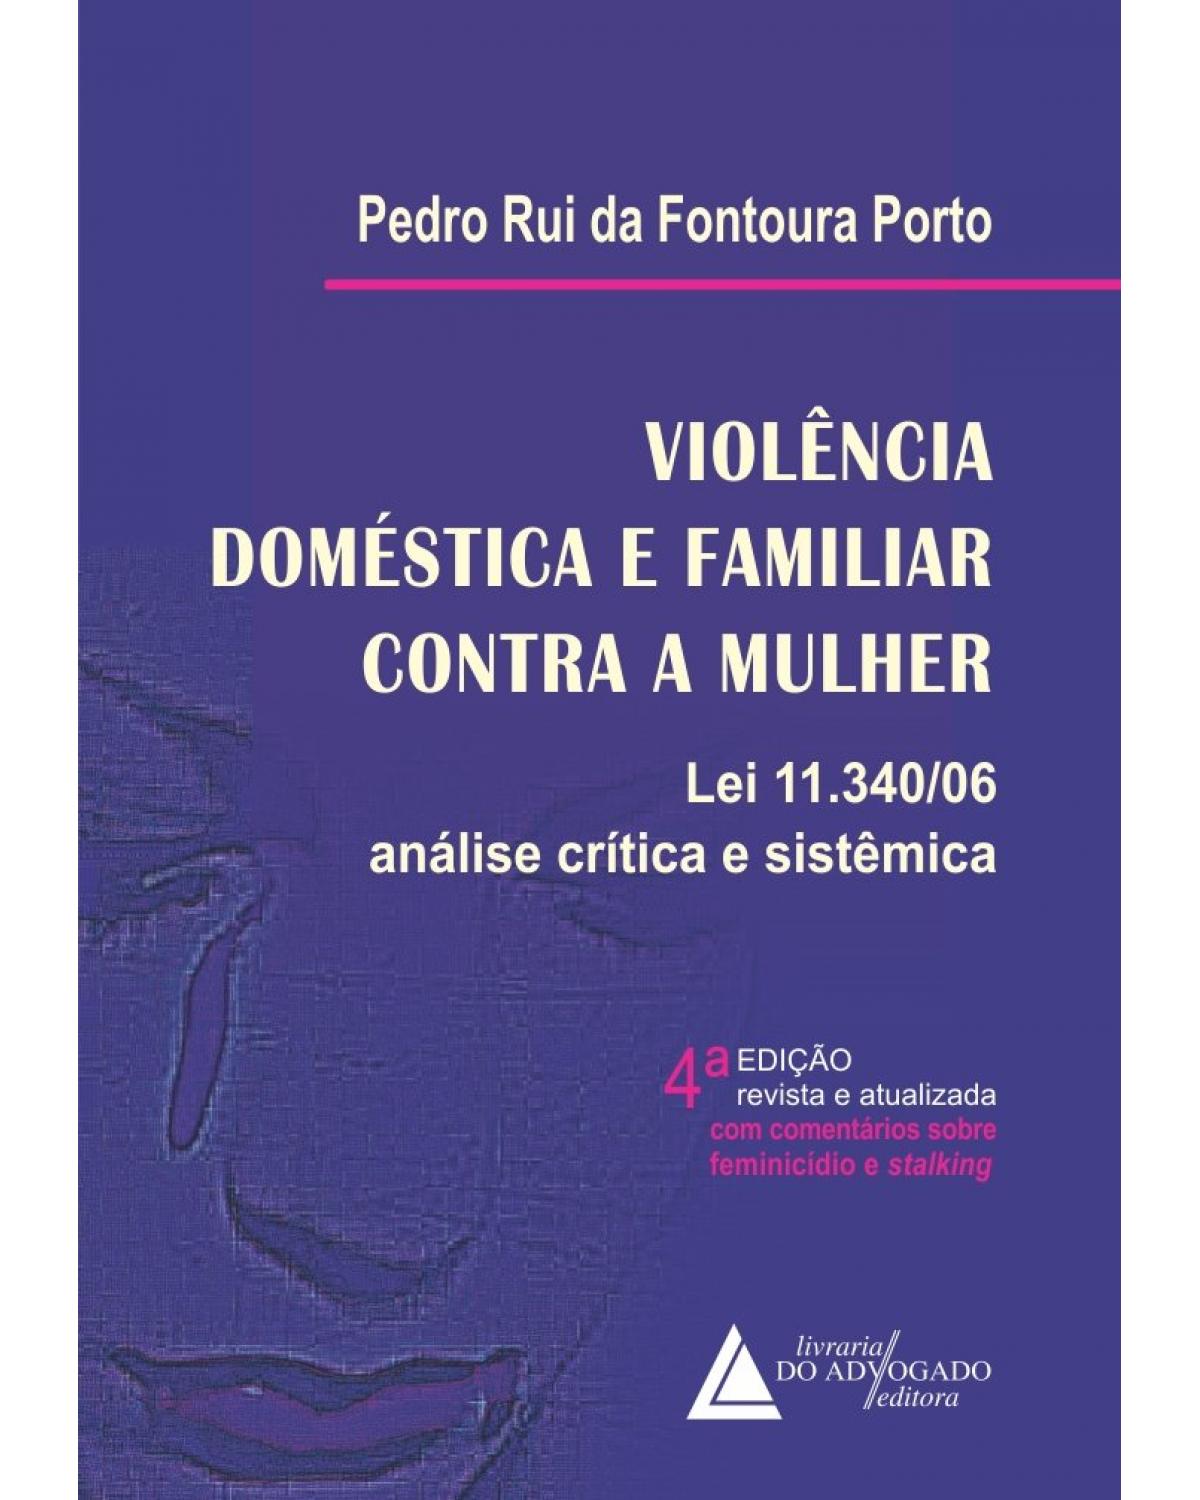 Violência doméstica e familiar contra a mulher: lei 11.340/06 - Análise crítica e sistêmica - 4ª Edição | 2021